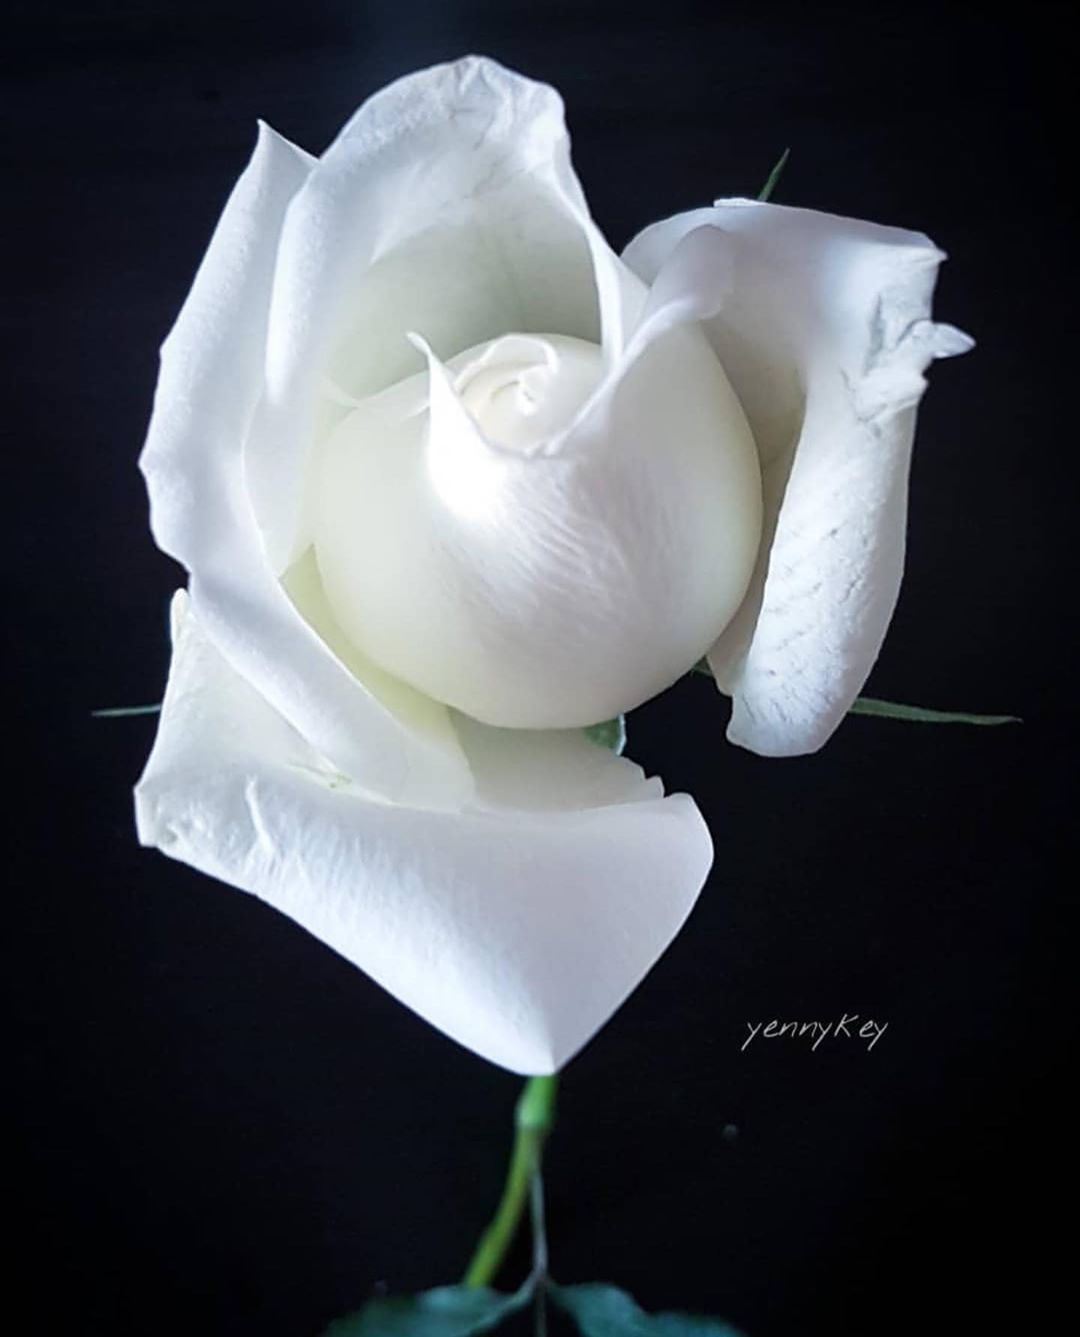 সাদা গোলাপ ফুলের ছবি - Pictures of white roses - গোলাপ ফুলের ছবি ডাউনলোড - বিভিন্ন রঙের গোলাপ ফুলের ছবি ডাউনলোড - rose flower - NeotericIT.com